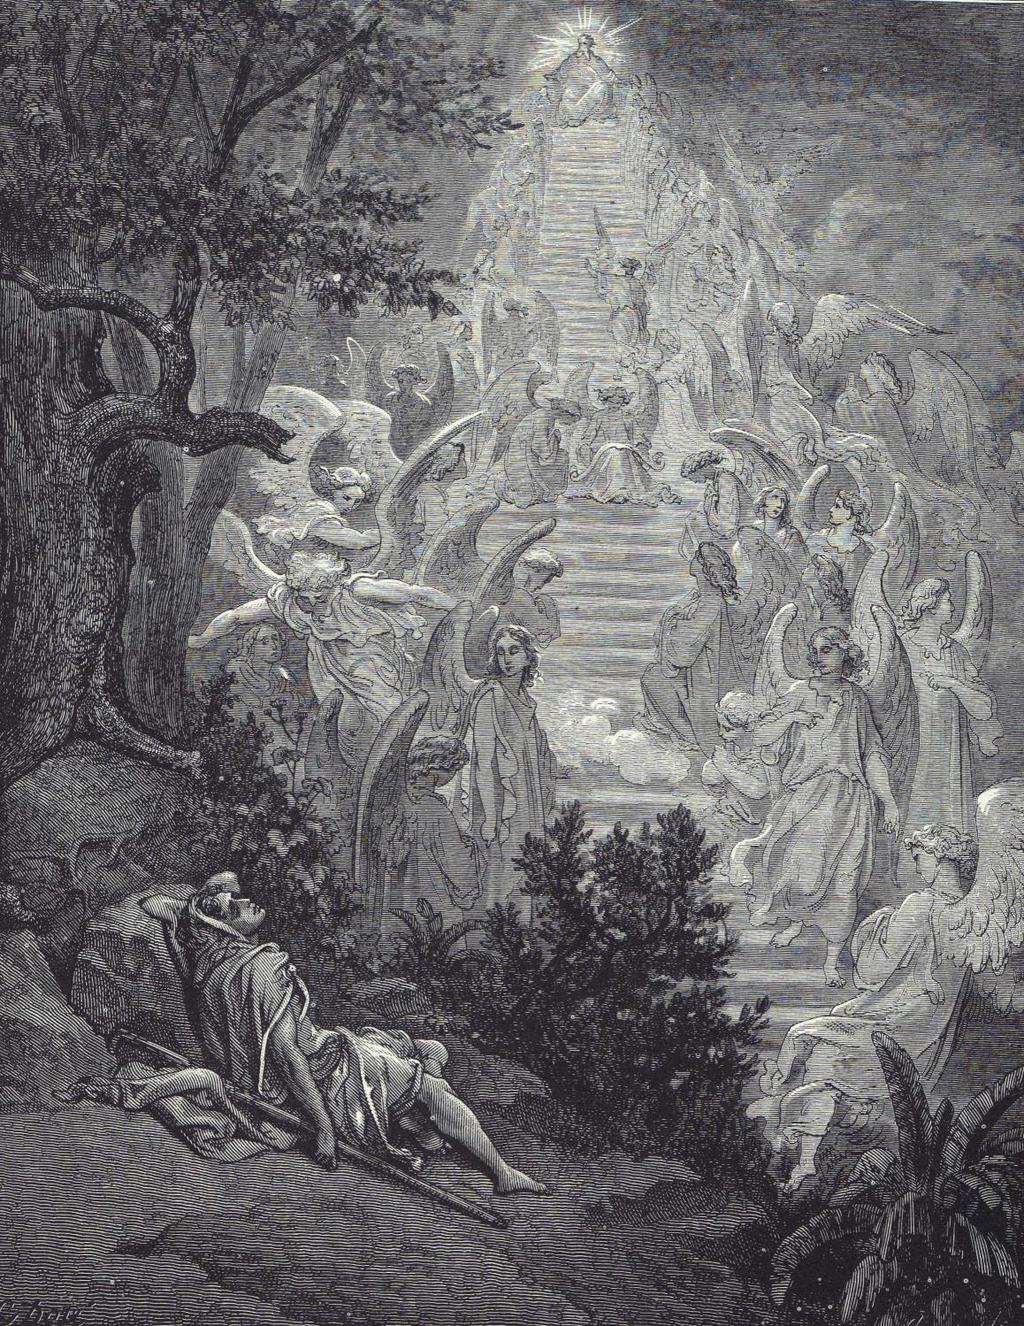 De acordo com o Midrash os anjos que subiam e desciam a escada, contemplados por Jacó em seu sonho, eram os príncipes das nações, que se erguiam e que caíam como simbolicamente lhe era mostrado.